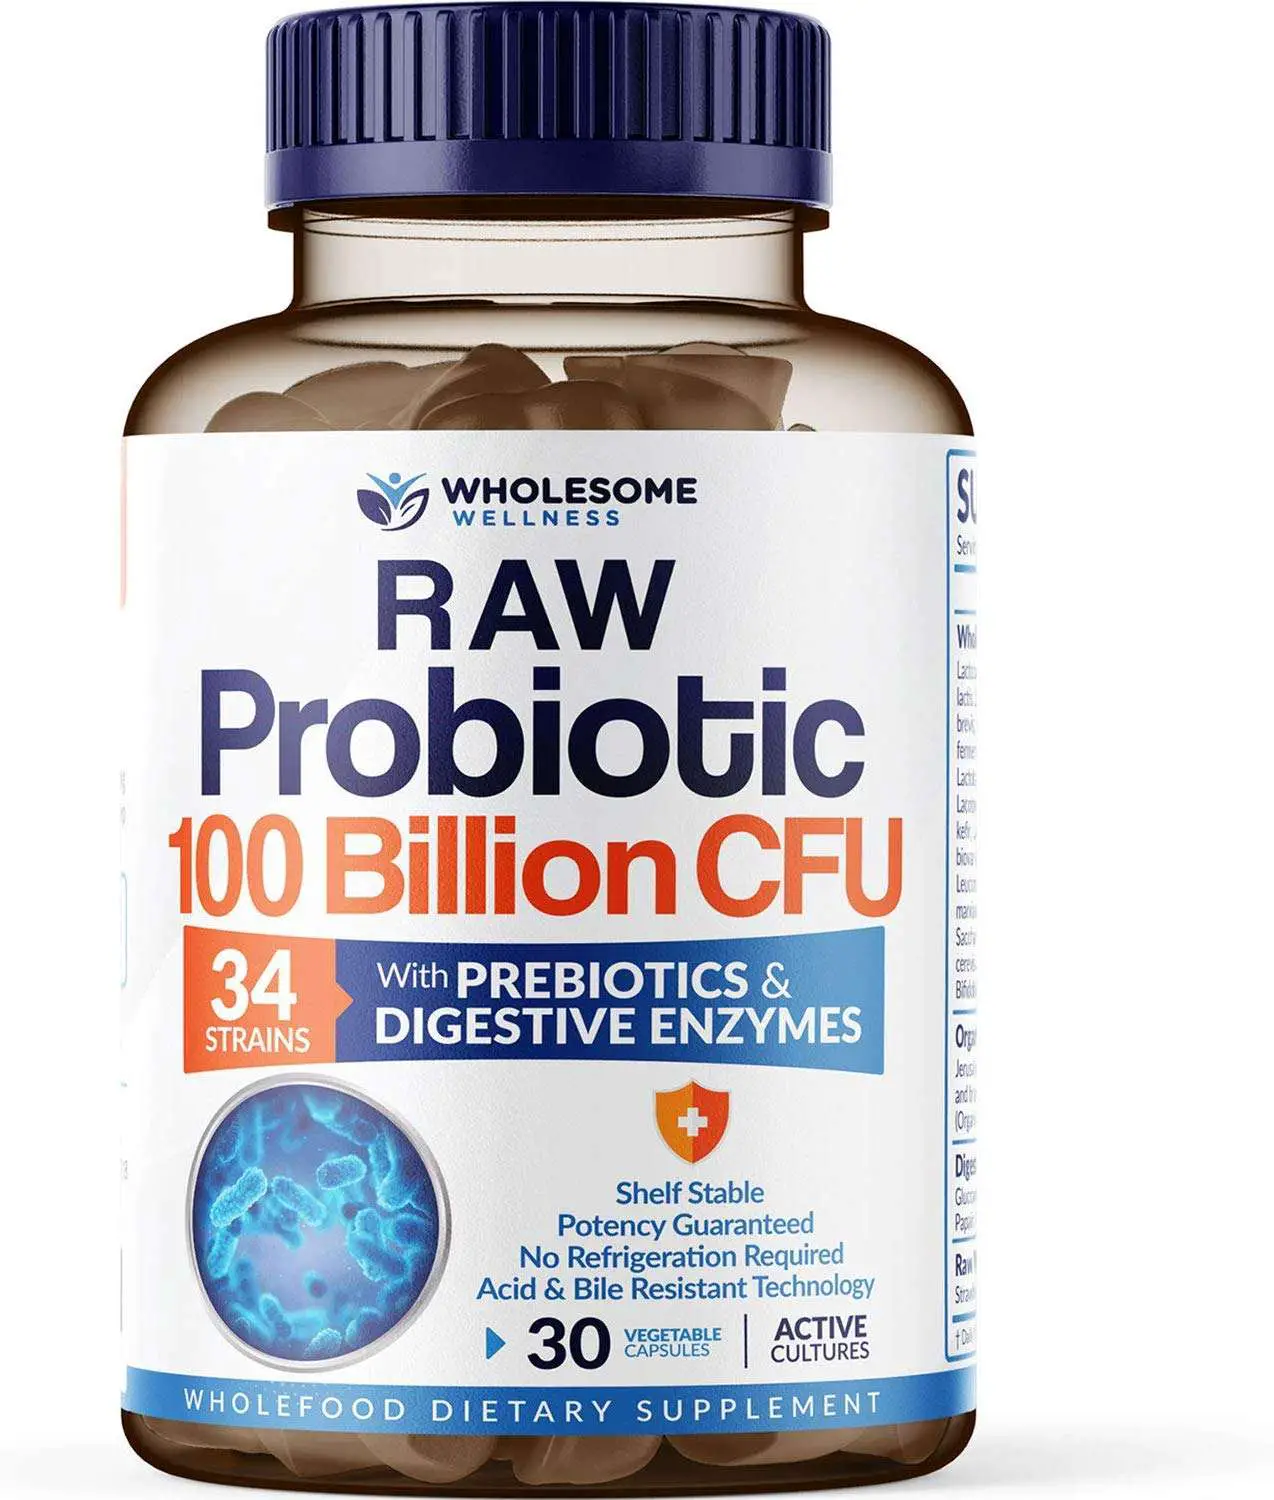 Best Probiotic [2021] Top Rated Probiotics Supplements ...